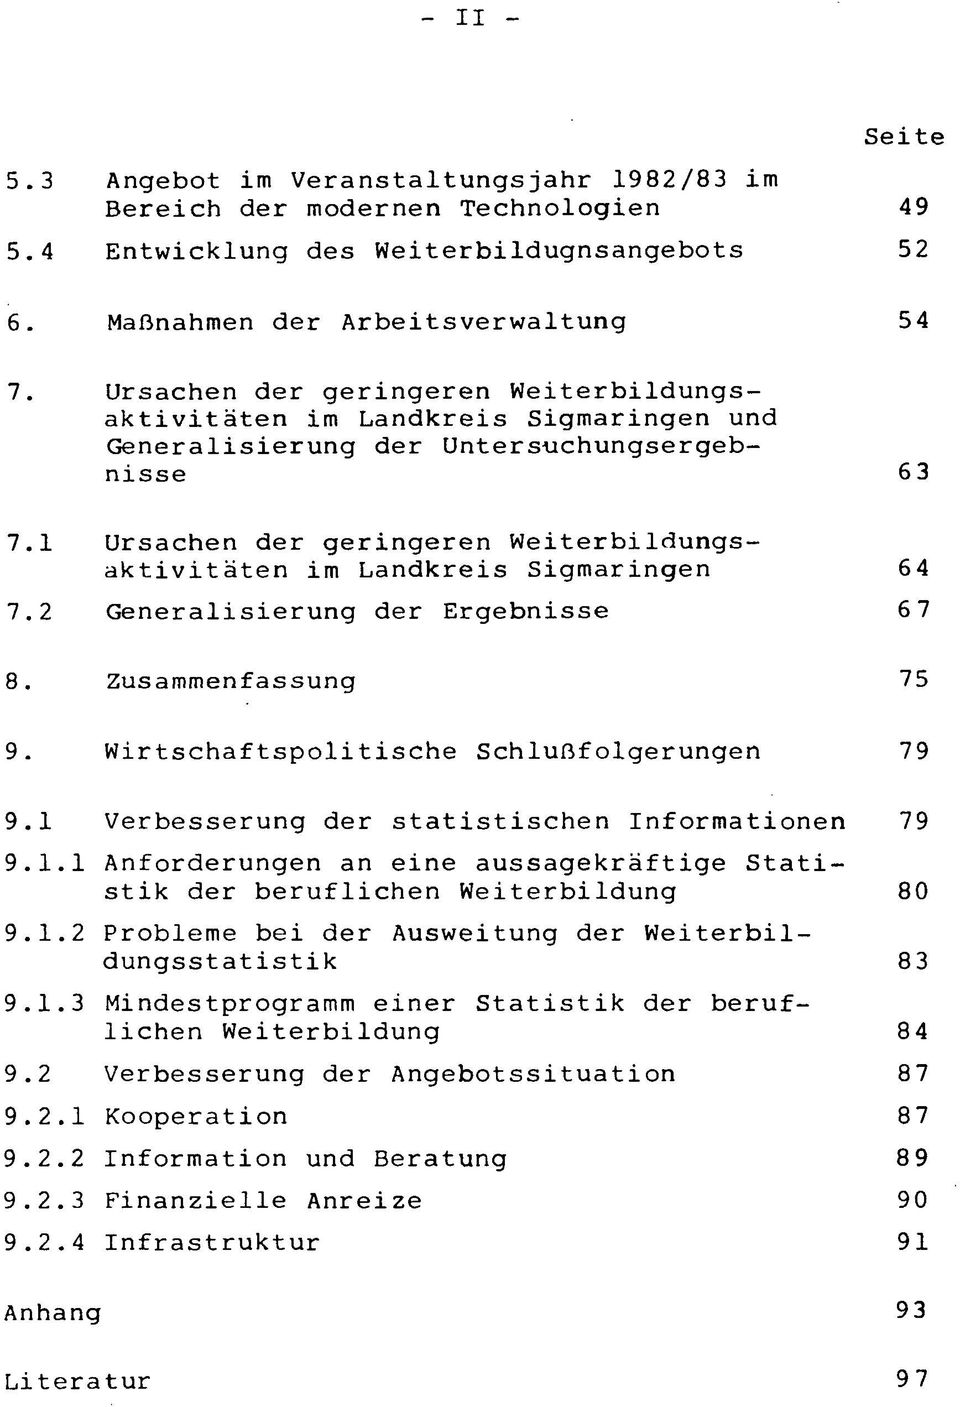 1 Ursachen der geringeren Weiterbildungsaktivitäten im Landkreis Sigmaringen 64 7.2 Generalisierung der Ergebnisse 6 7 8. Zusammenfassung 75 9. Wirtschaftspolitische Schlußfolgerungen 79 9.